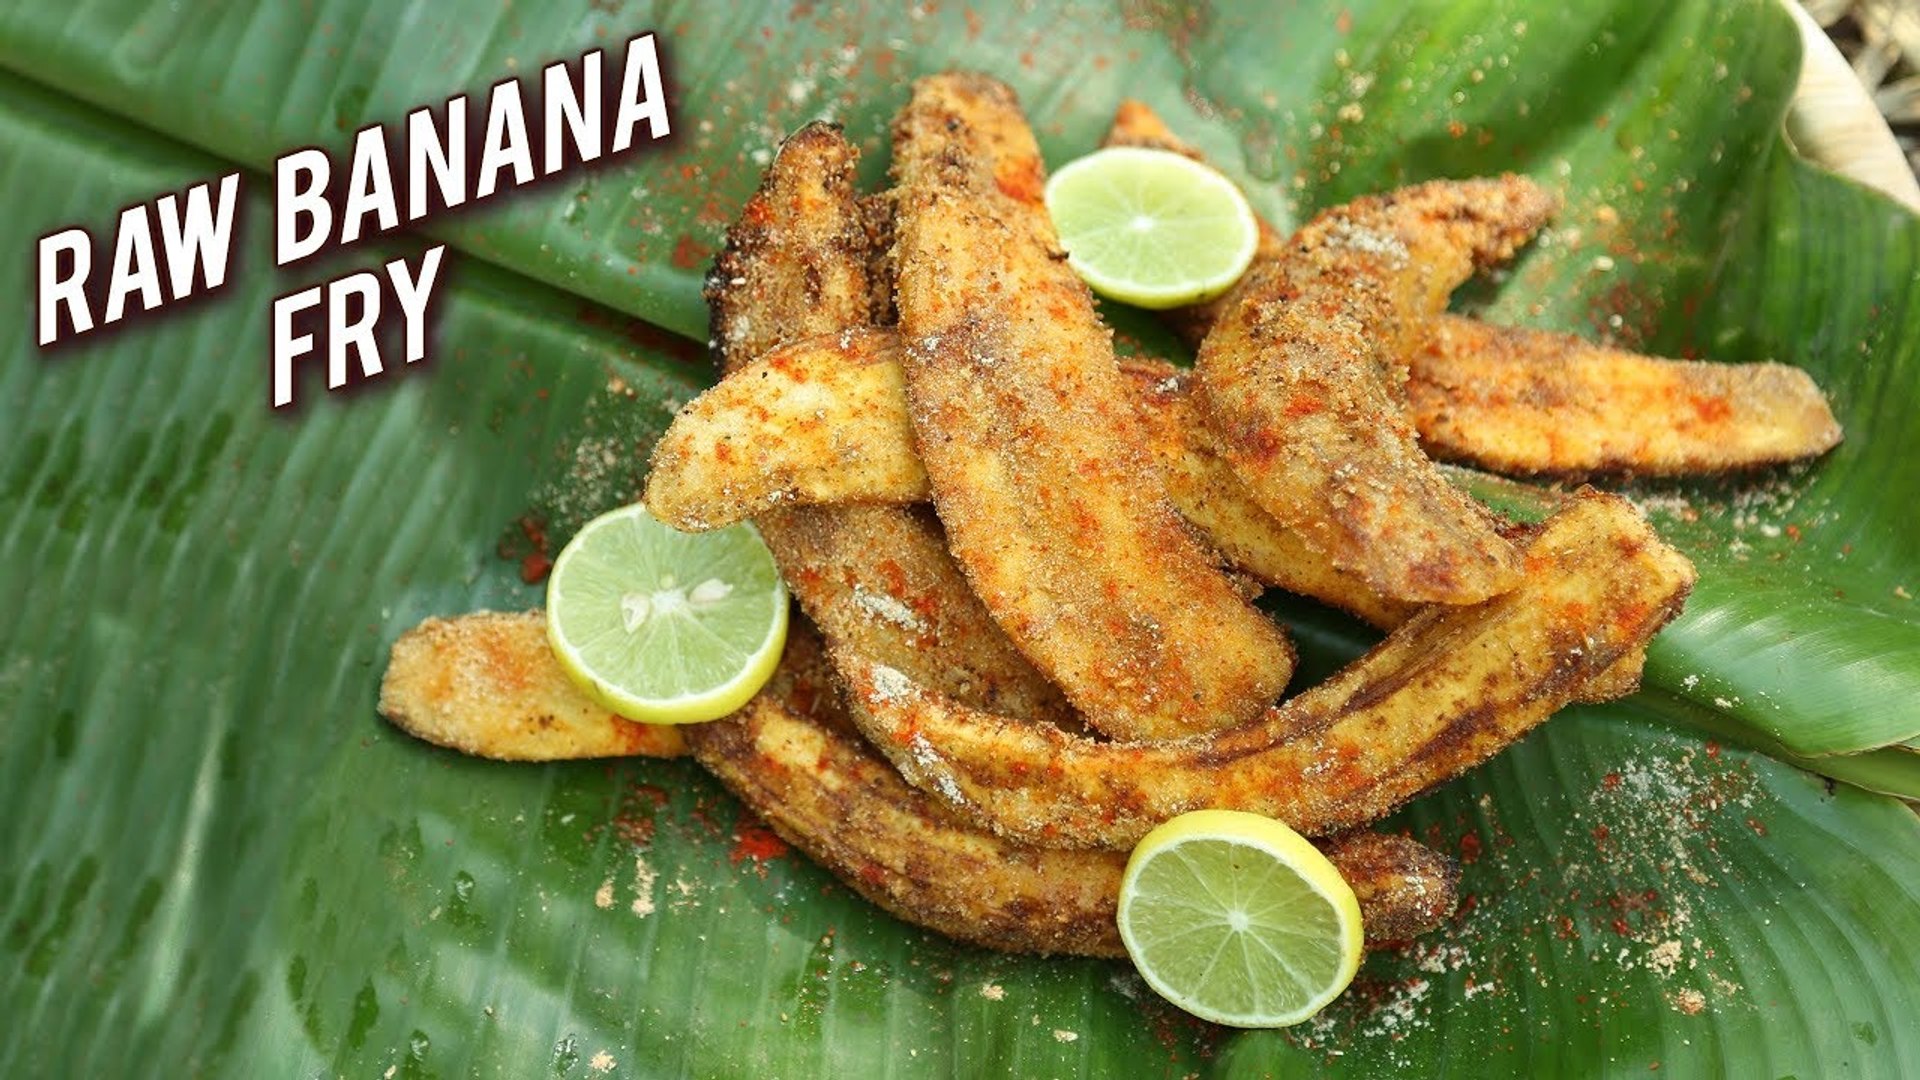 Raw Banana Fry Recipe How To Make Raw Banana Fry Recipe Spicy Banana Fry Varun Video Dailymotion